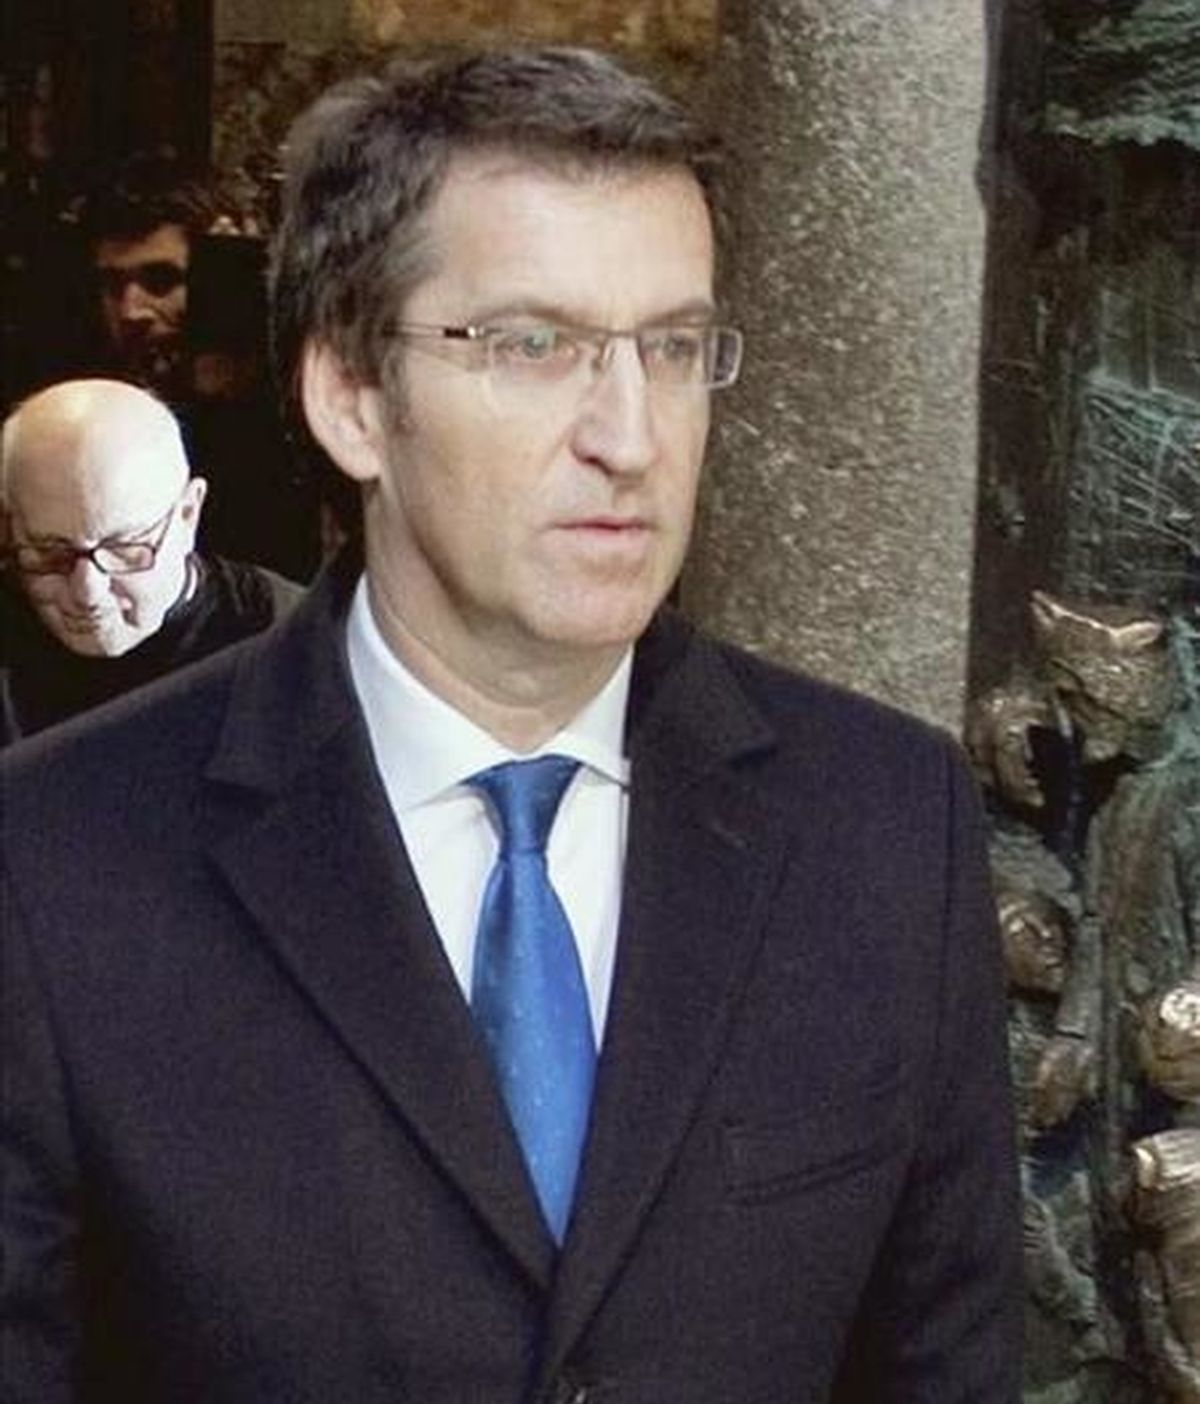 El presidente de la Xunta, Alberto Núñez Feijóo. EFE